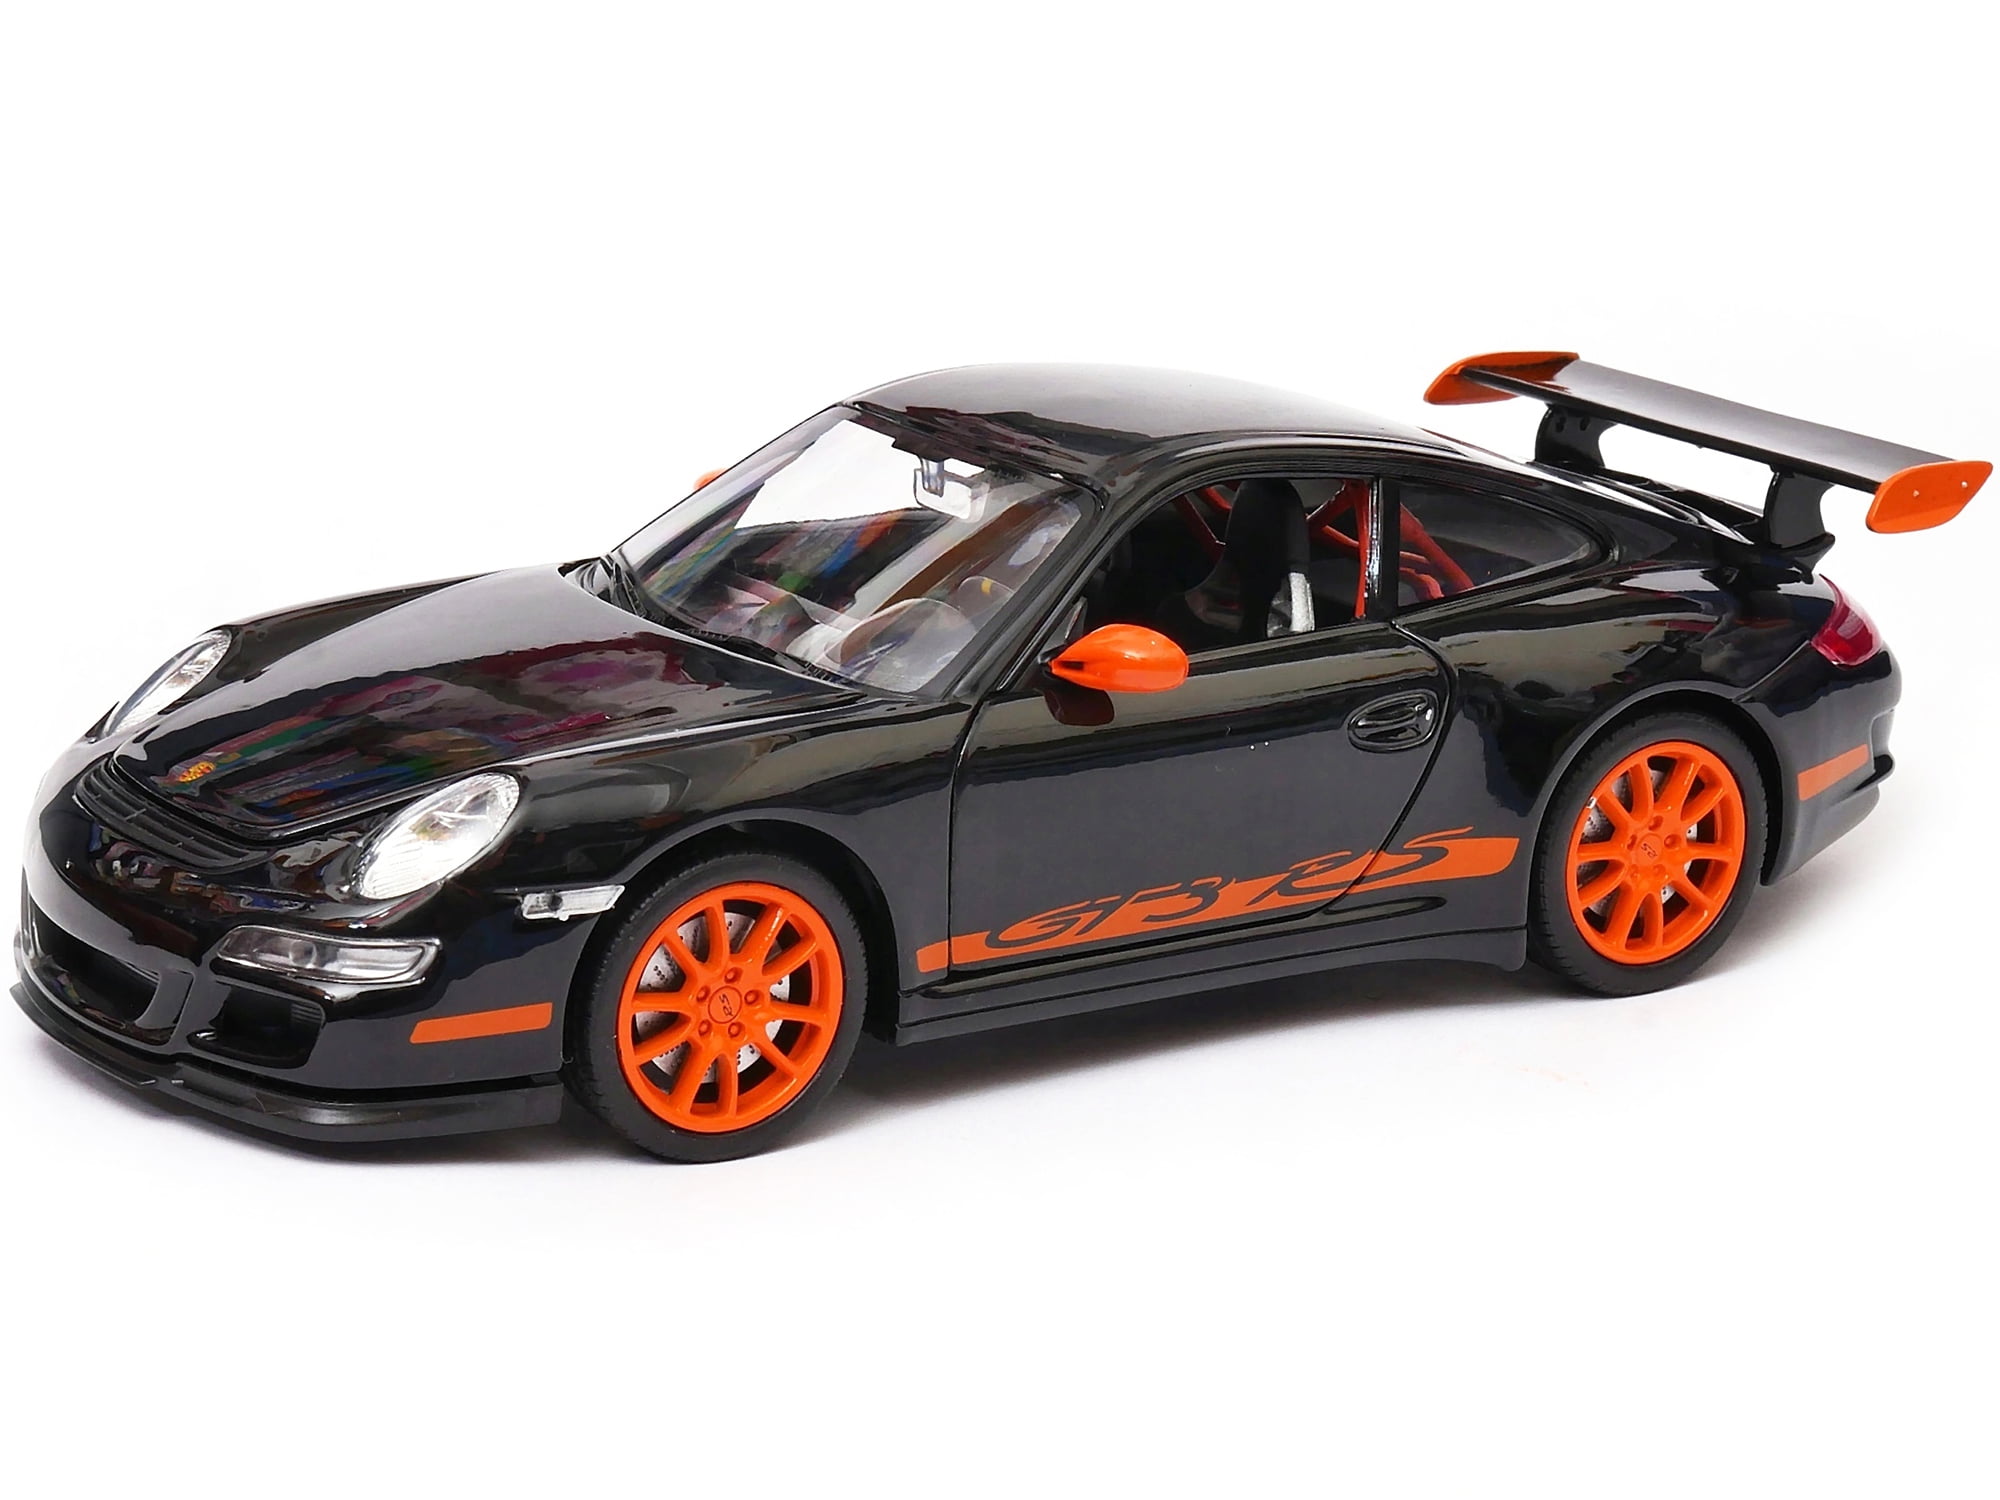 4.5" Welly Porsche 911 997 GT3 RS Diecast Toy Car Orange With Black Wheels